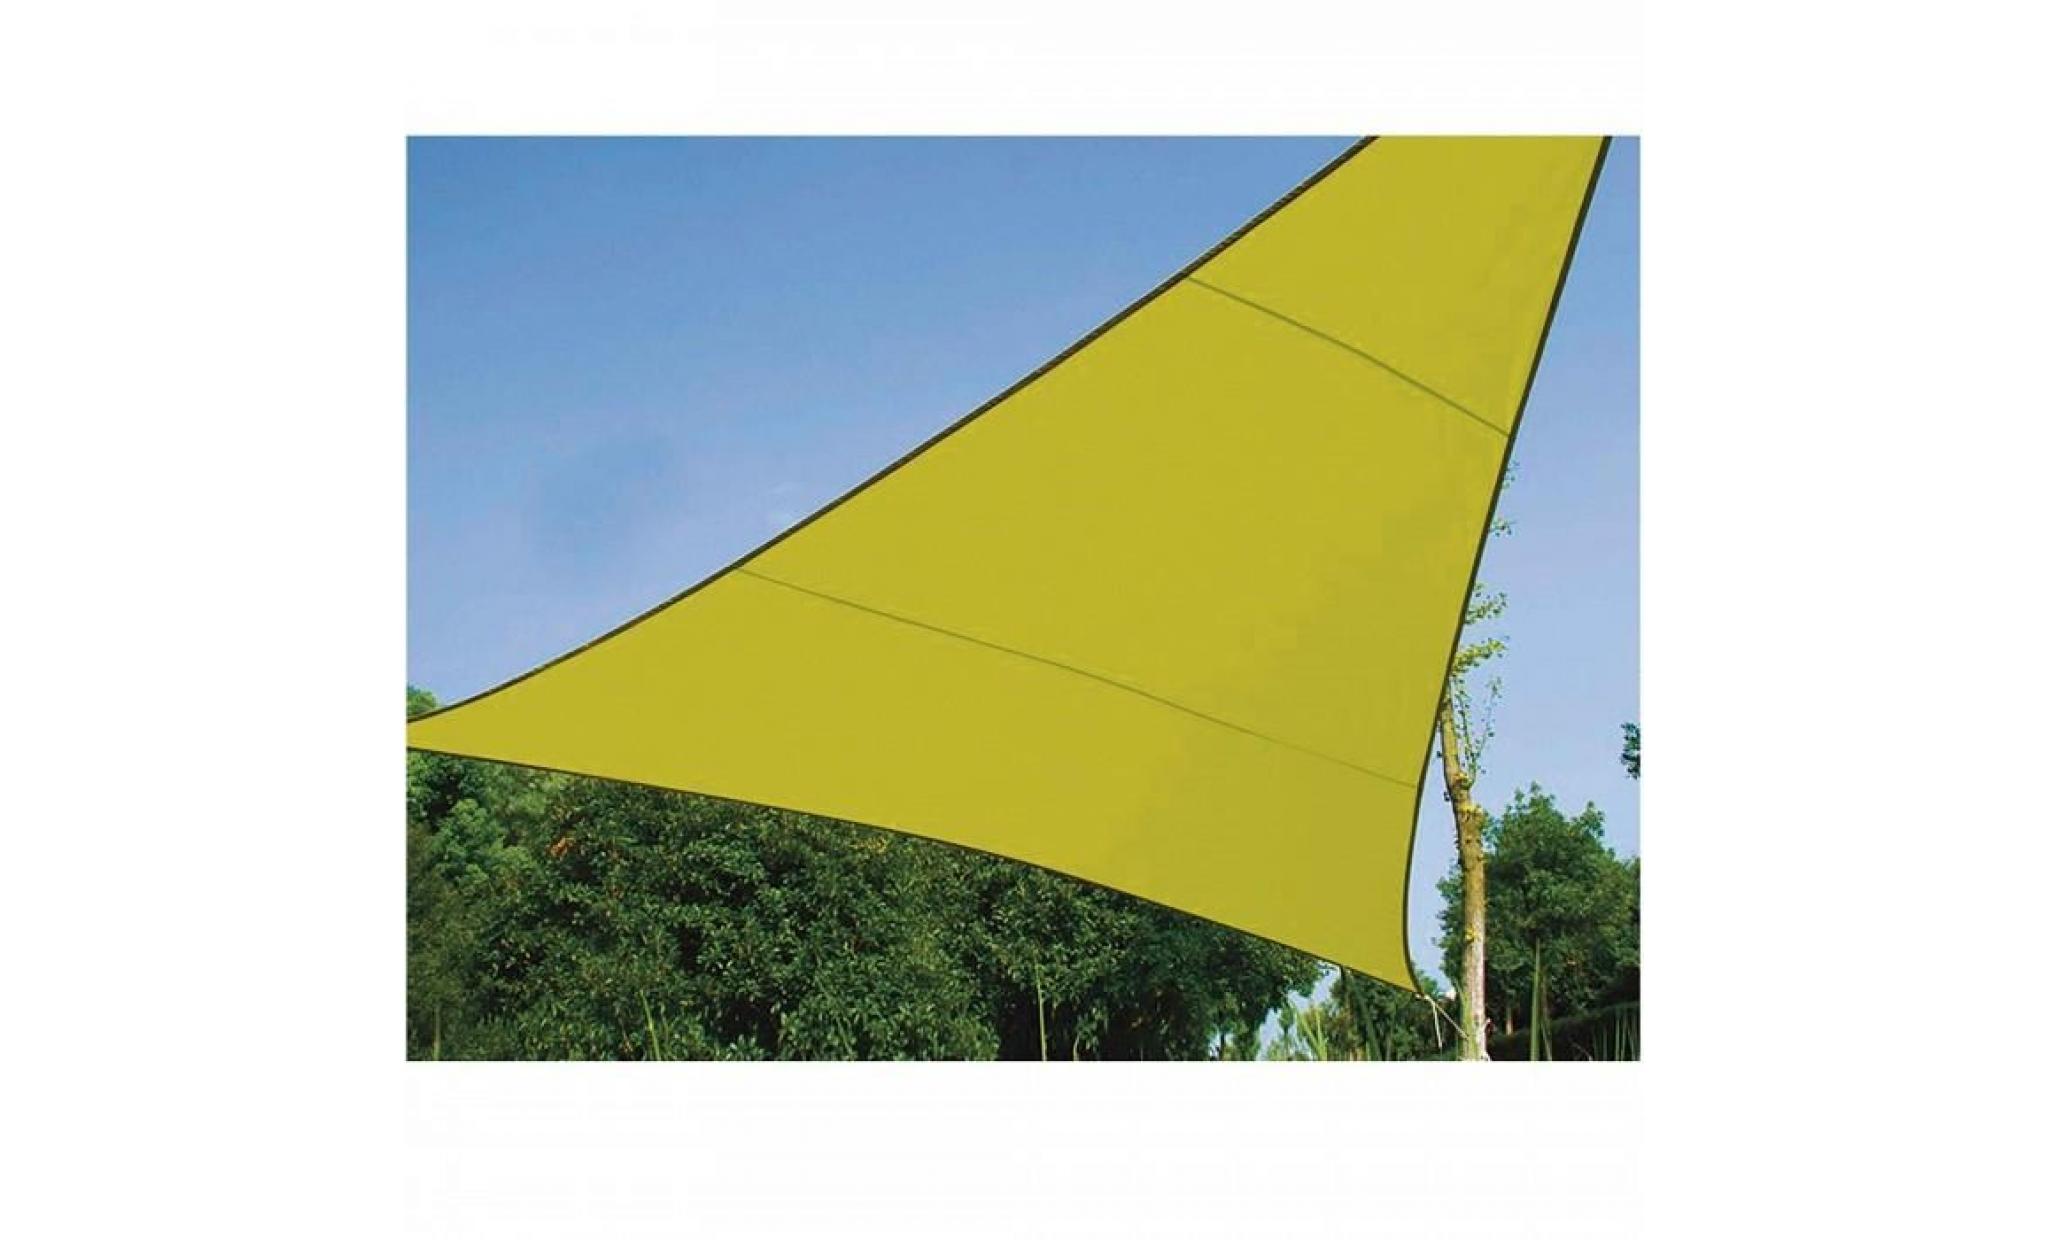 5 x 5 x 5 m voile d'ombrage triangle 5 m, ideale pour votre jardin et vos terrasses. tres belle toile couleur vert anis